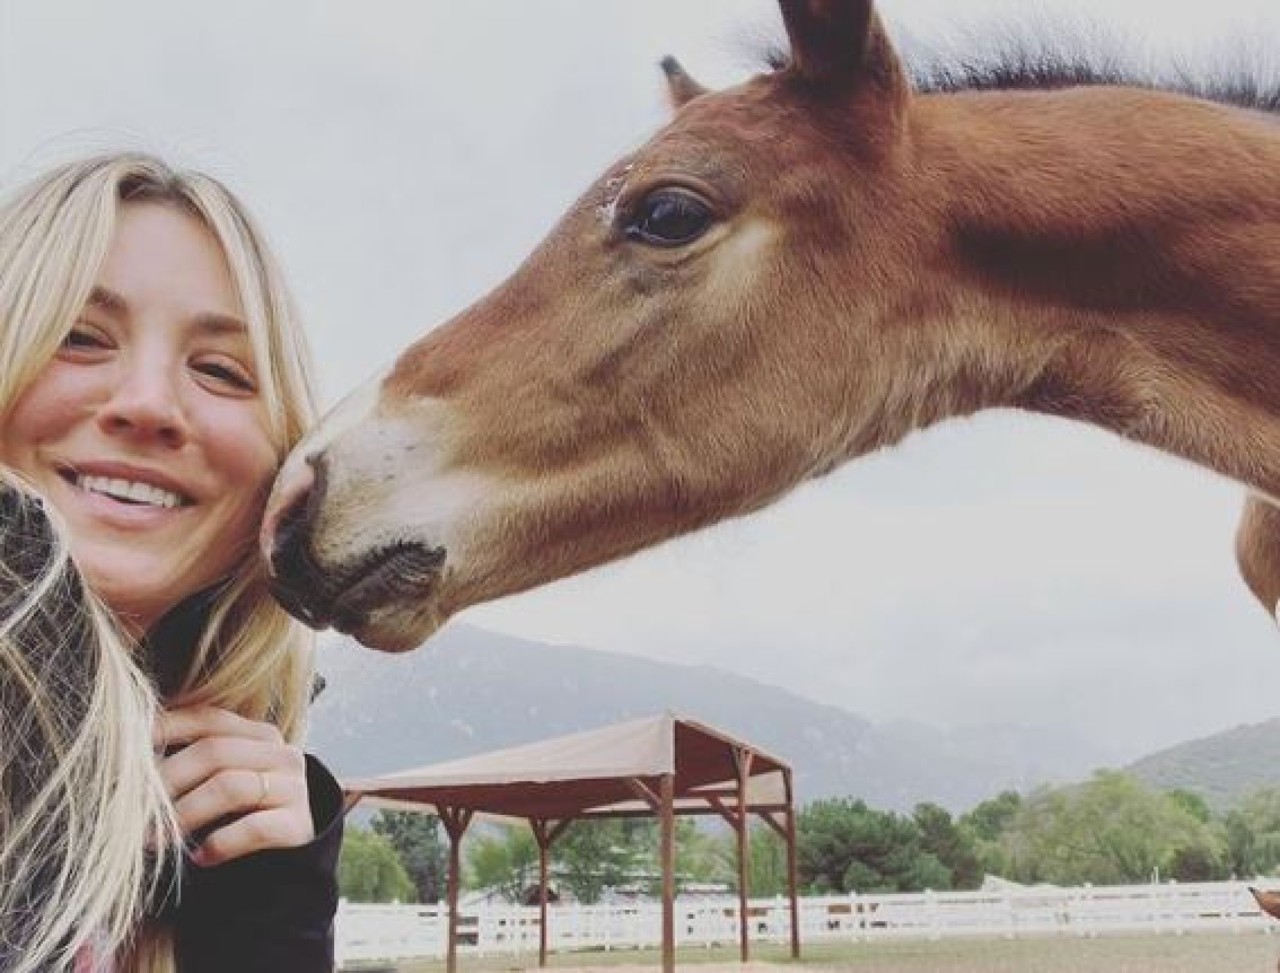 L’attrice Kaley Cuoco si offre di comprare il cavallo maltrattato alle Olimpiadi: “Sento che è mio dovere”